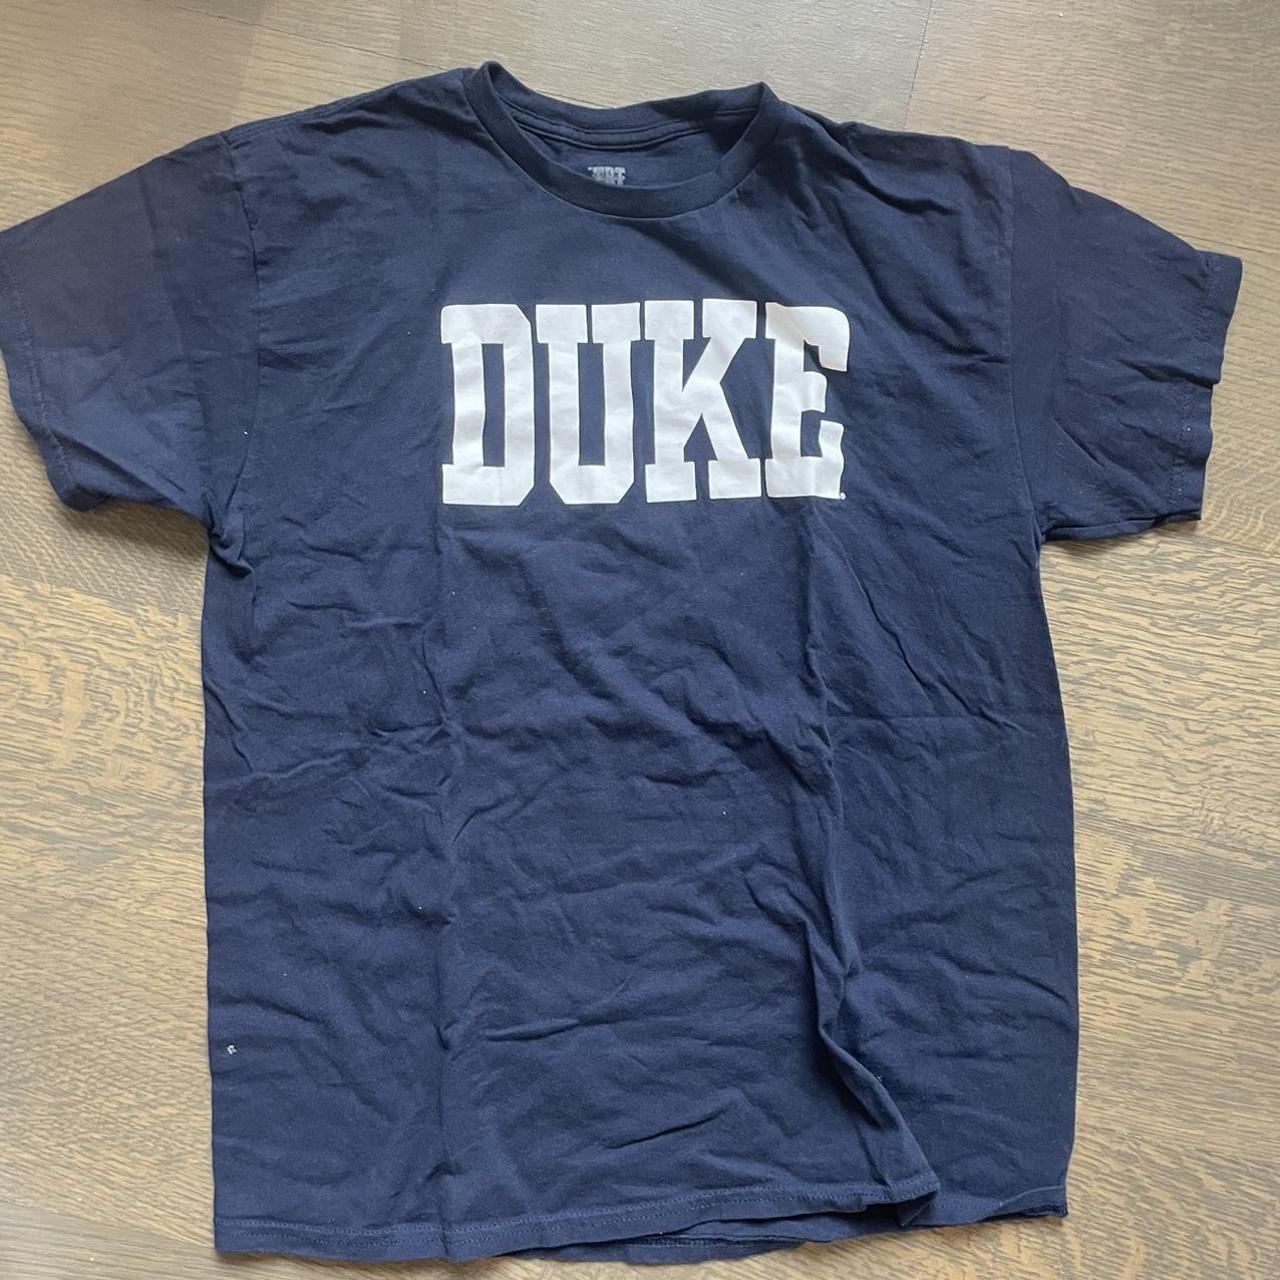 Duke Men's White and Navy T-shirt (2)